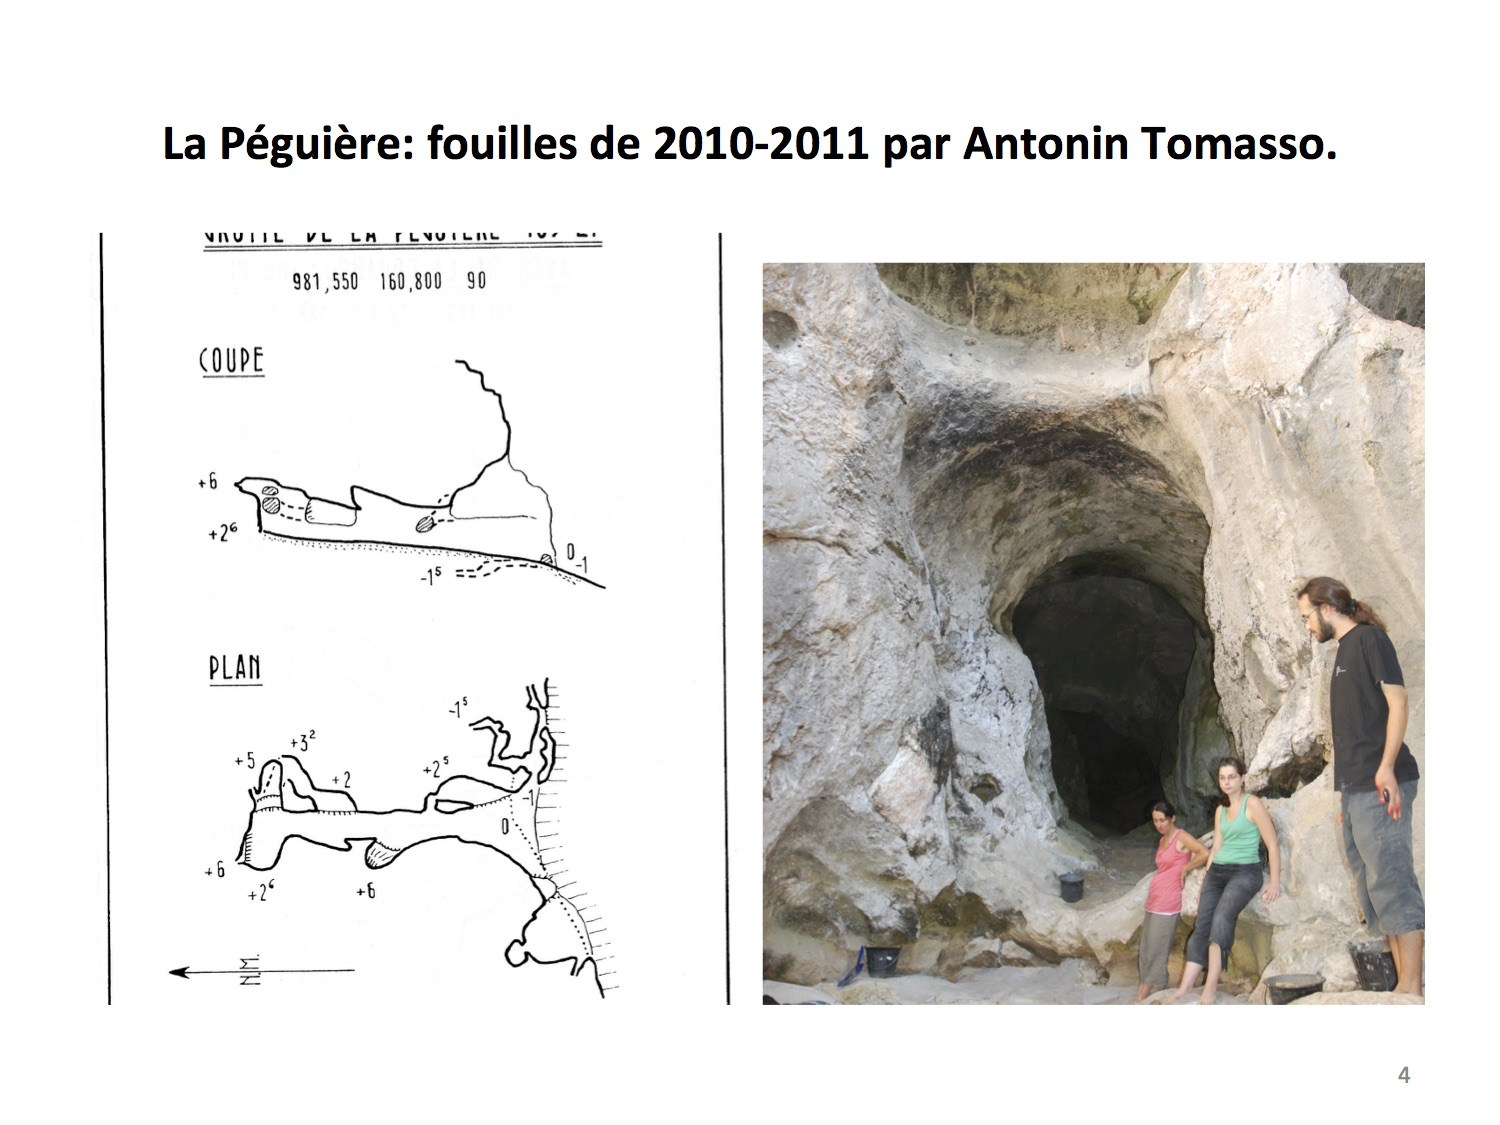 LaPéguière fouilles de 2010-2011